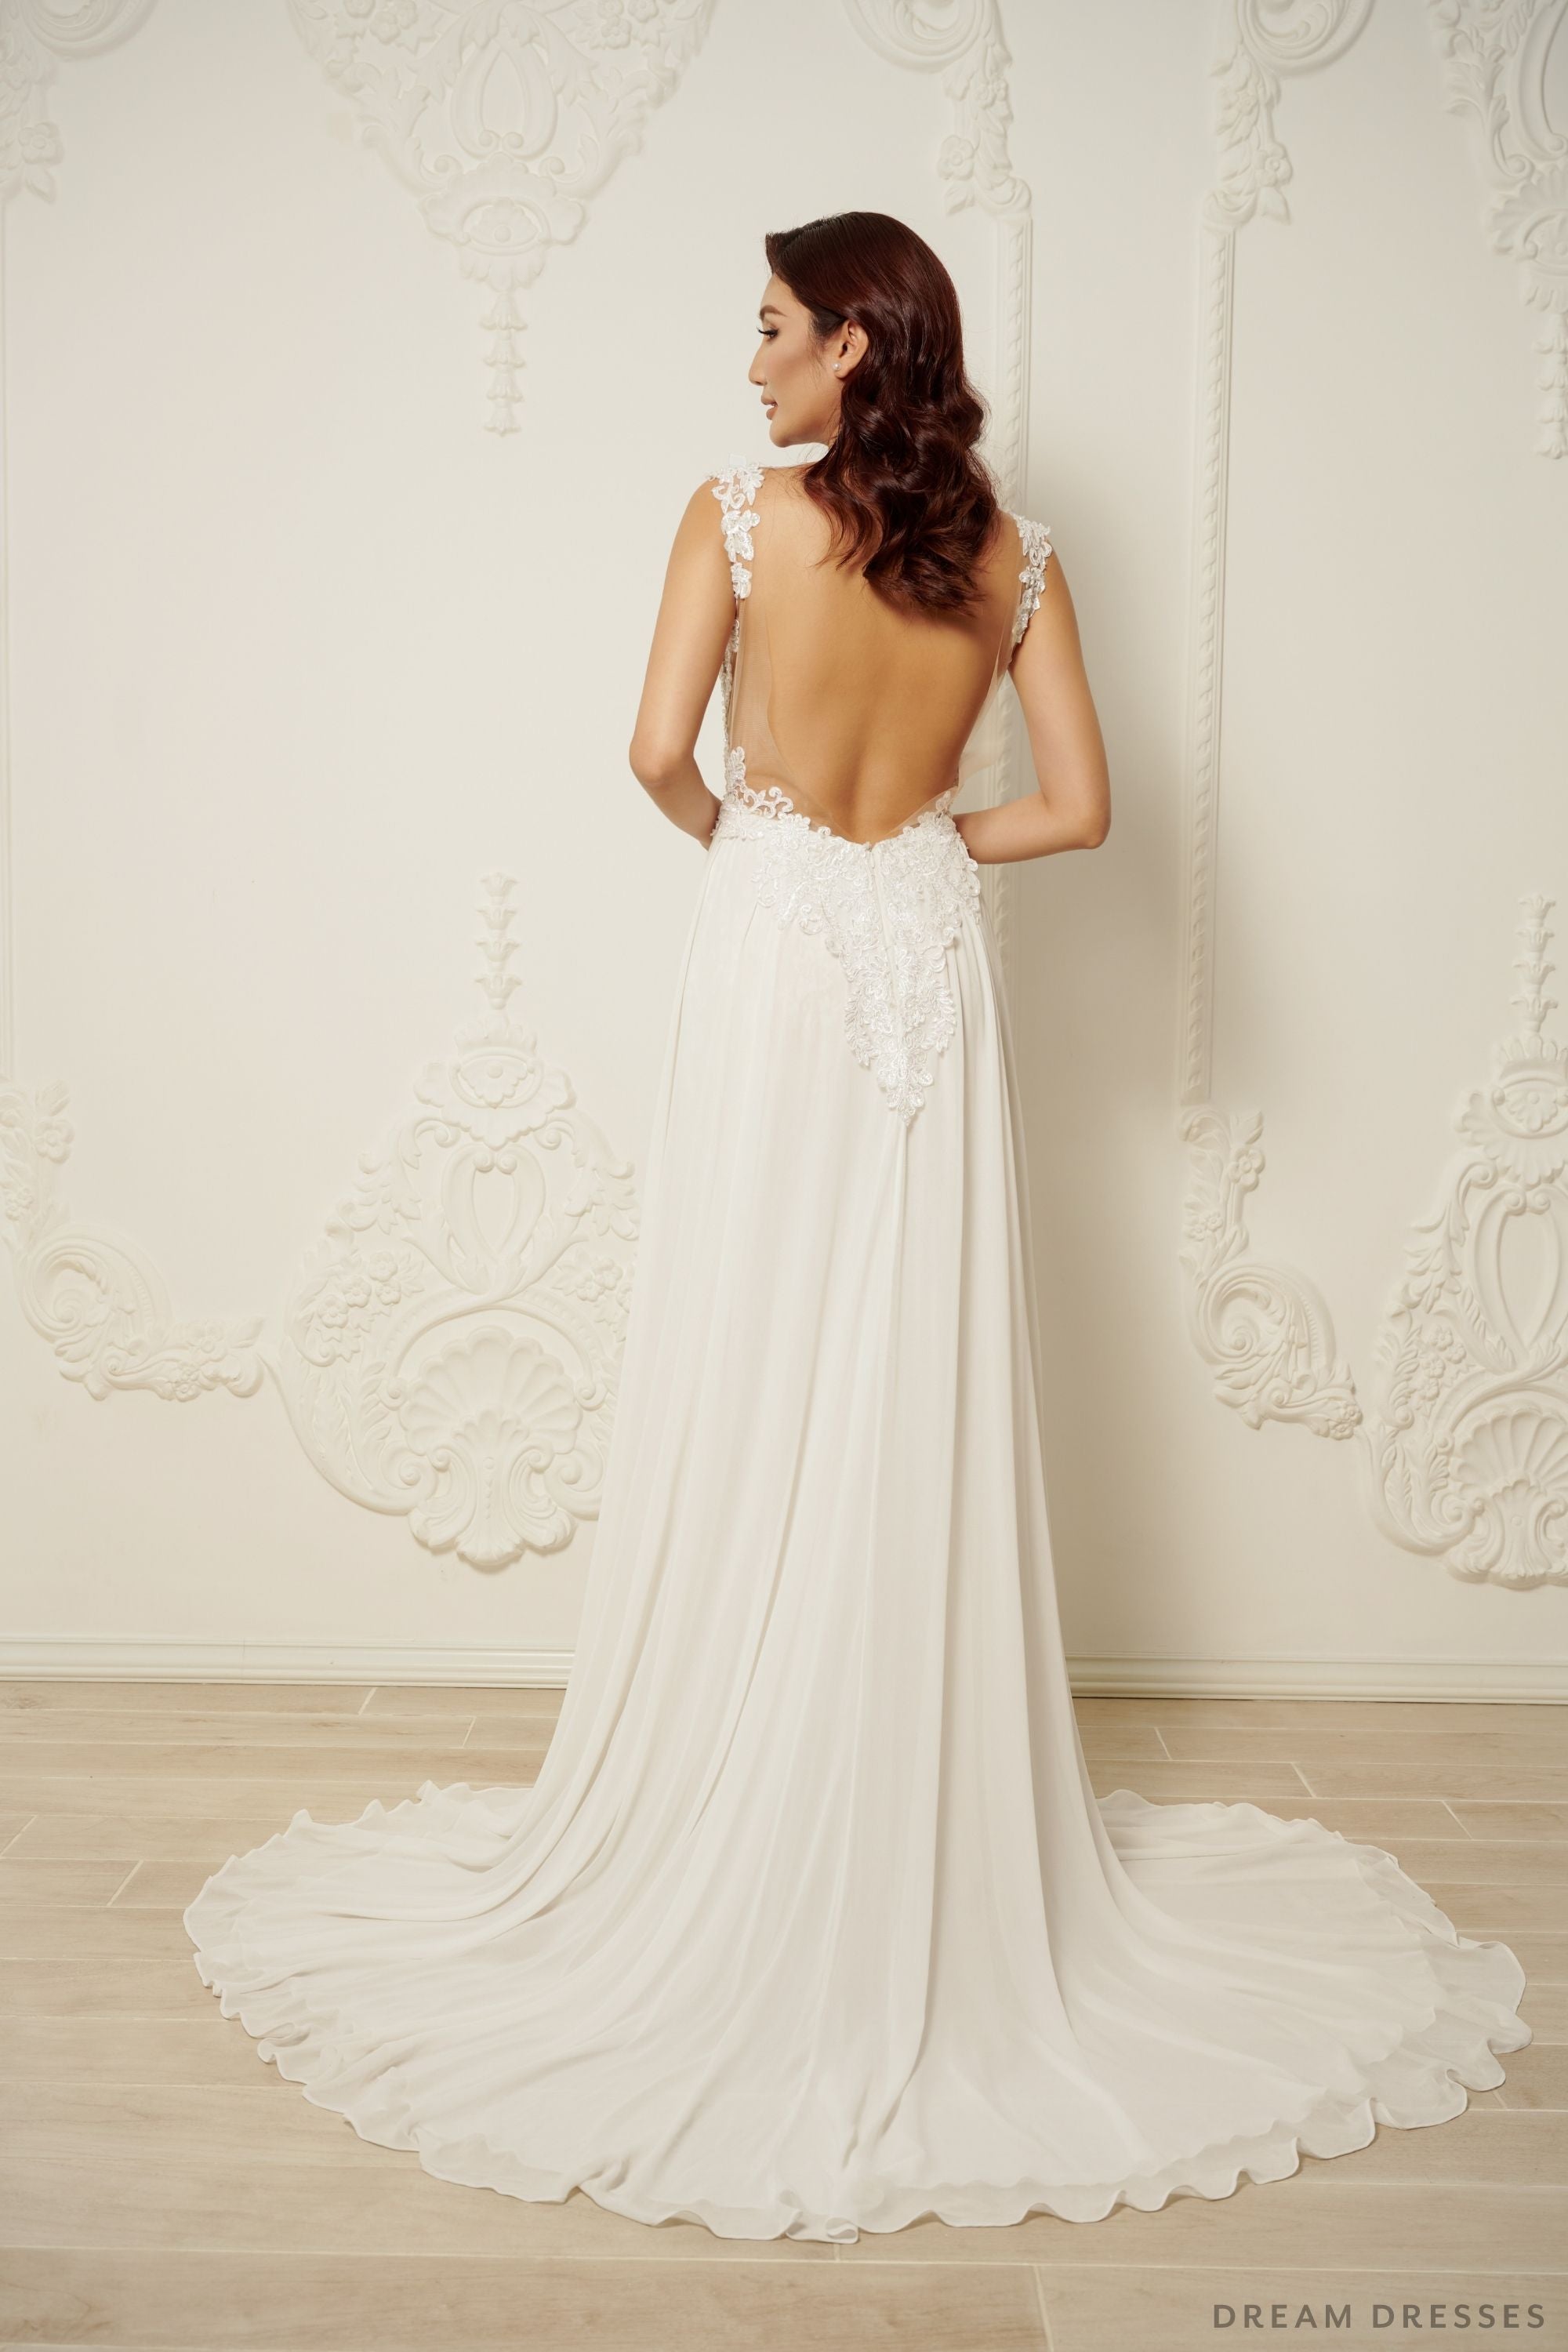 Lace and Chiffon Wedding Dress (#INAYA)